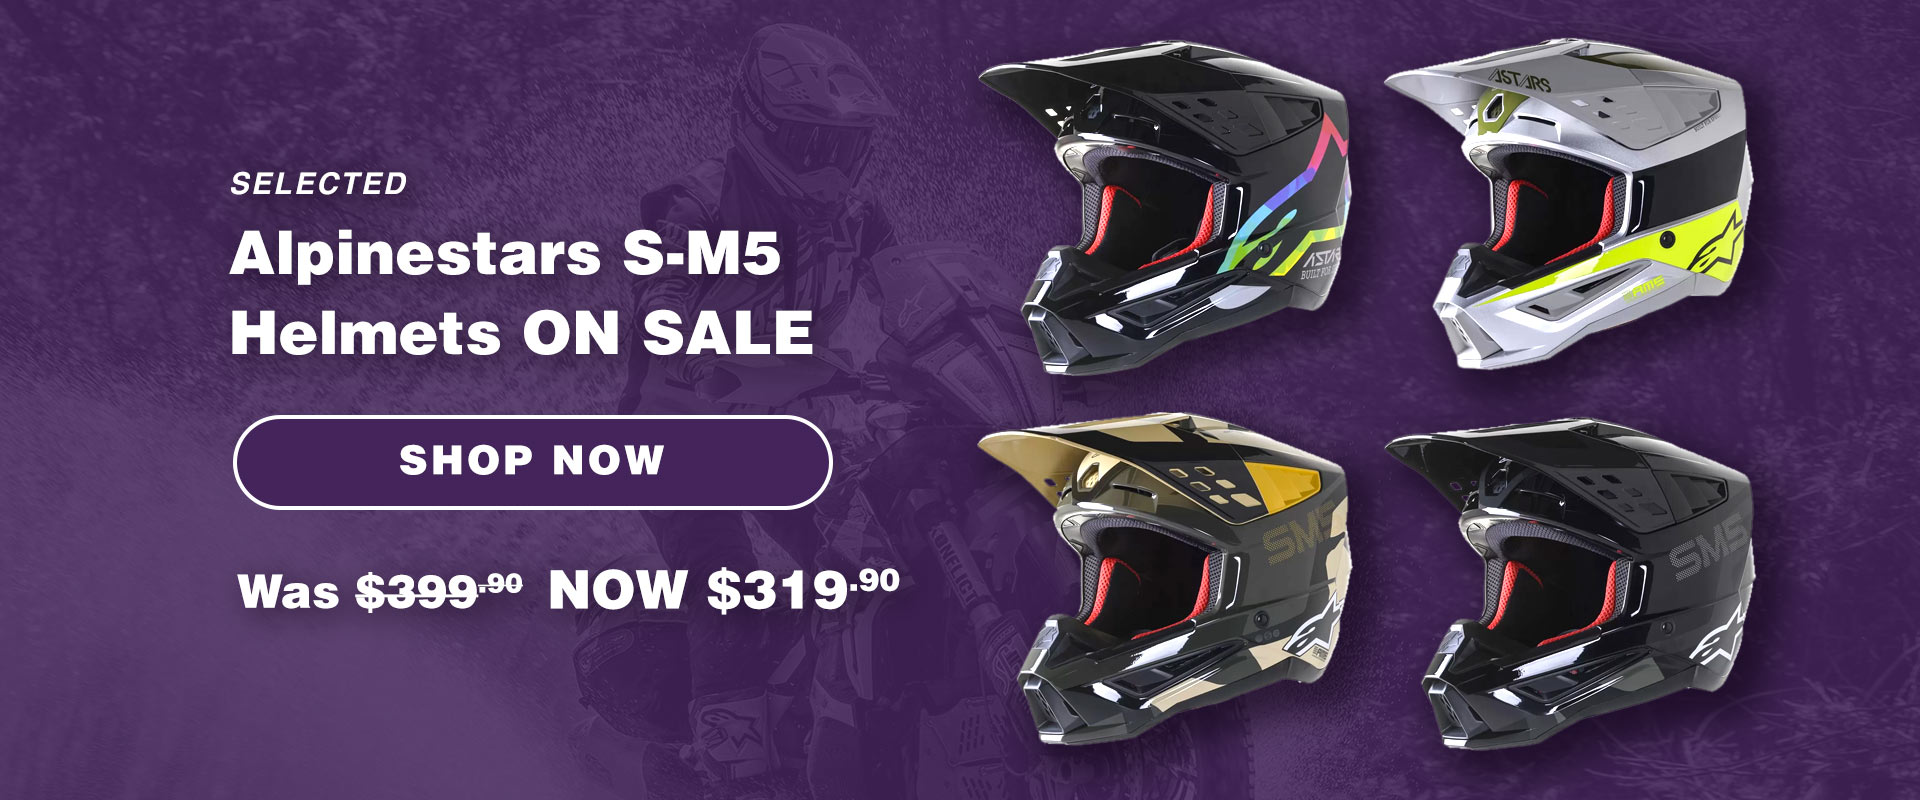 Selected Alpinestars S-M5 Helmets on Sale